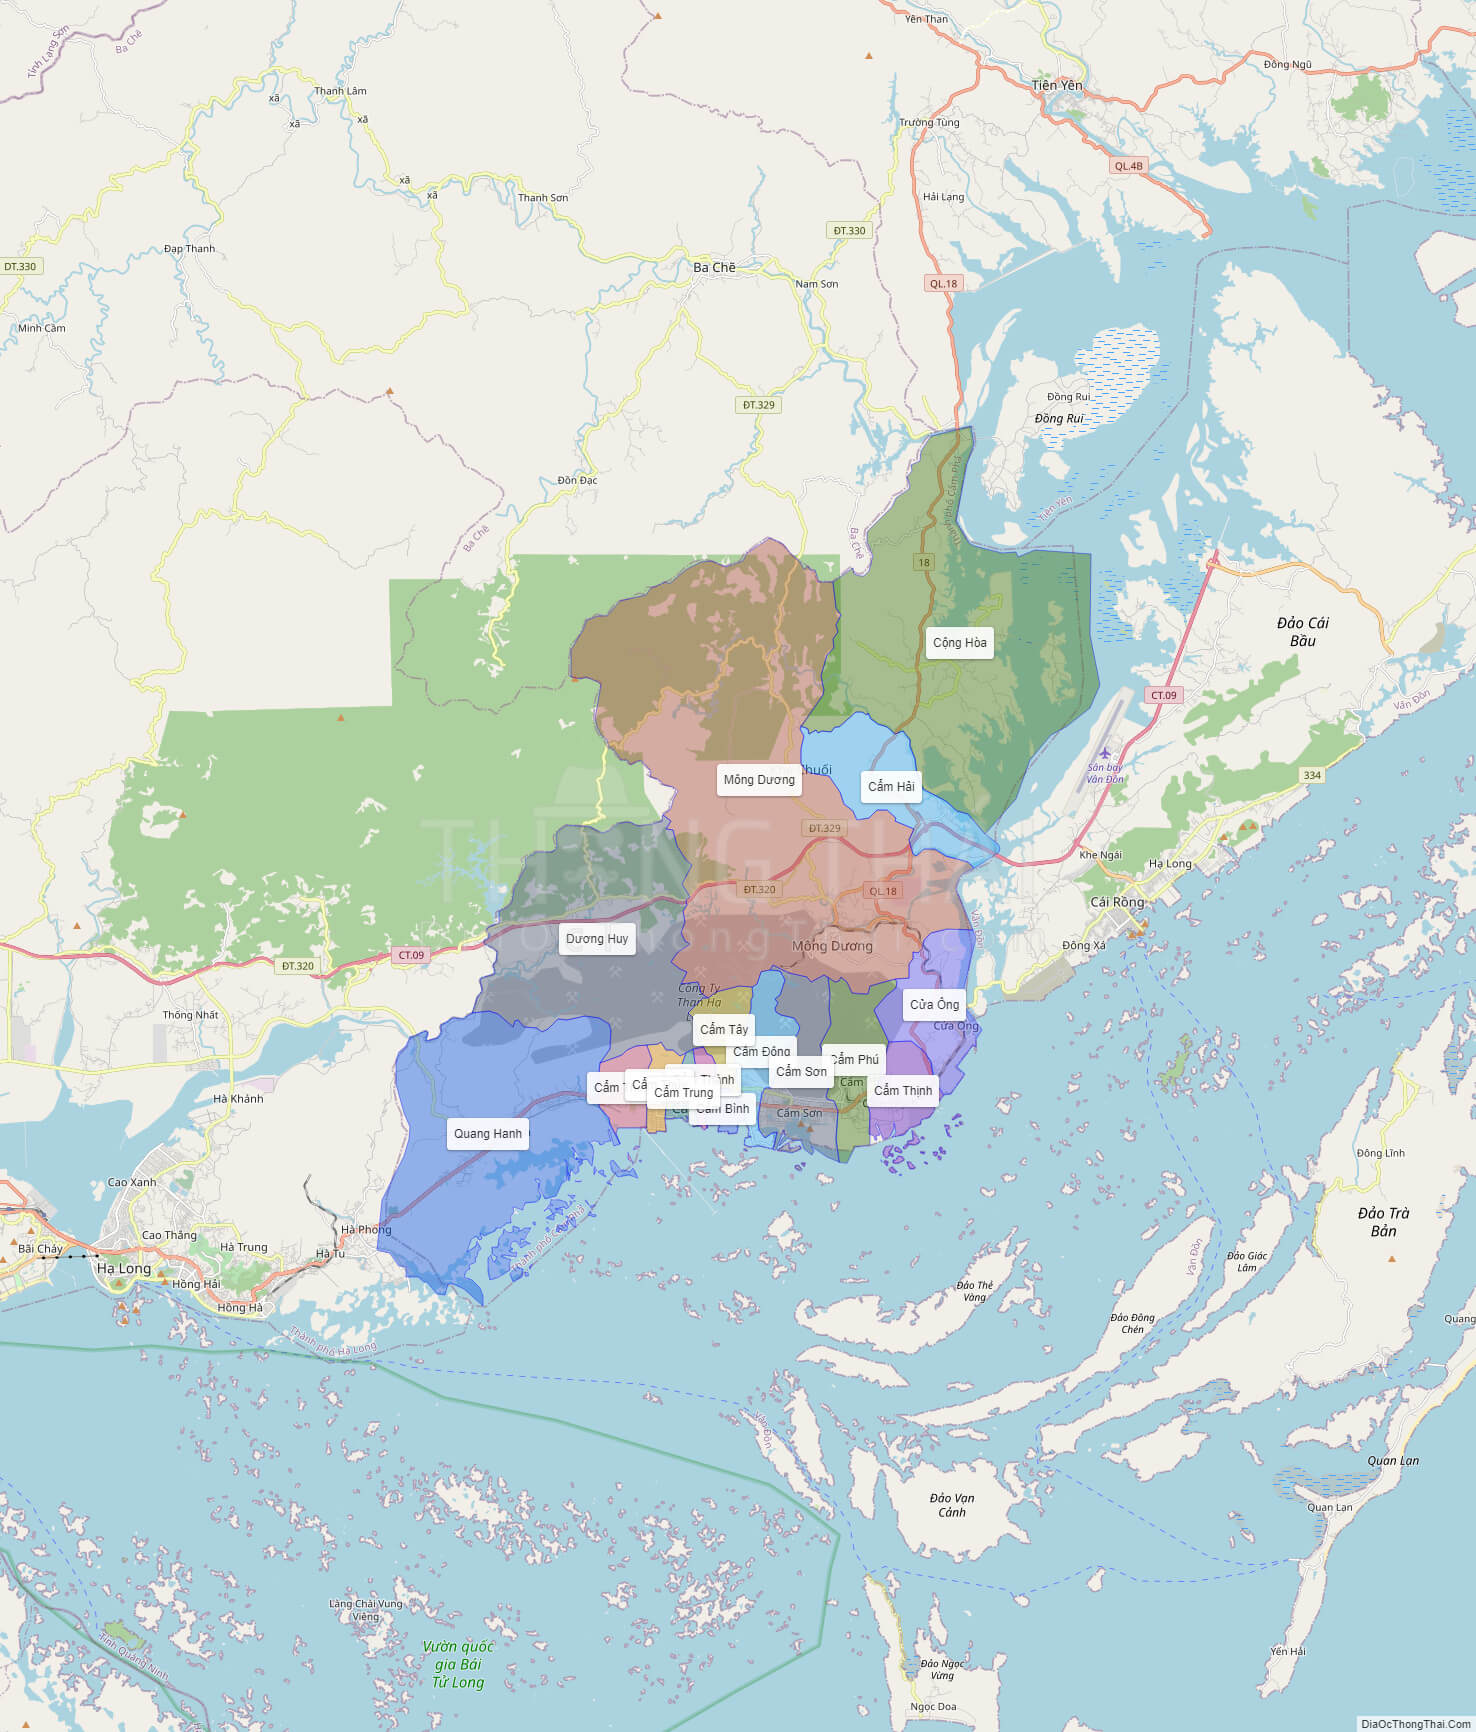 Bản đồ hành chính tỉnh Quảng Ninh đã được cập nhật và chỉnh sửa để phù hợp với những thay đổi địa chính sách mới nhất của tỉnh. Hãy khám phá bản đồ này để tìm hiểu sâu hơn về khu vực này và định hình kế hoạch du lịch của bạn.